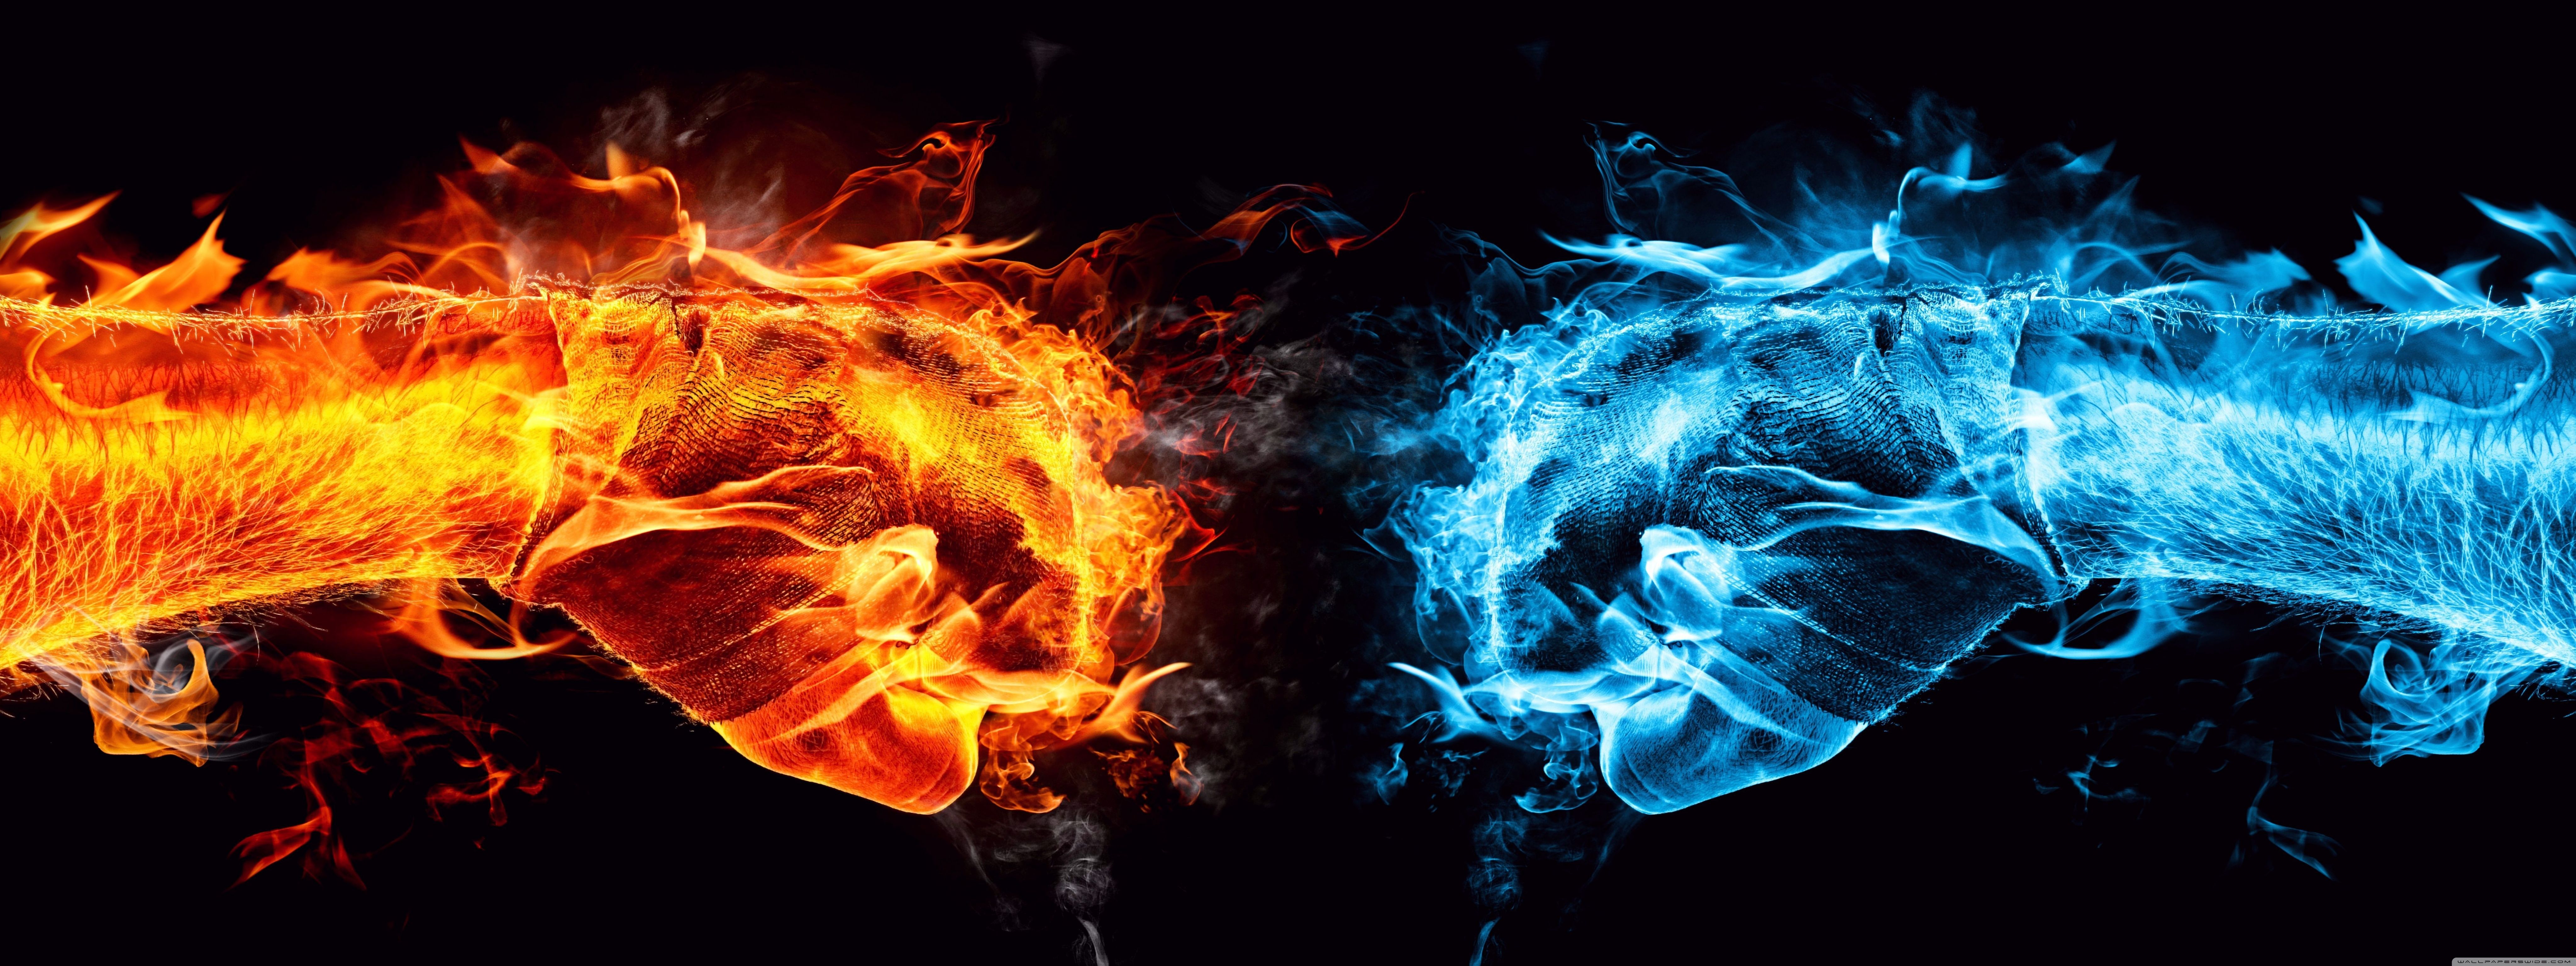 fire_fist_vs_water_fist-wallpaper-8192x3072.jpg